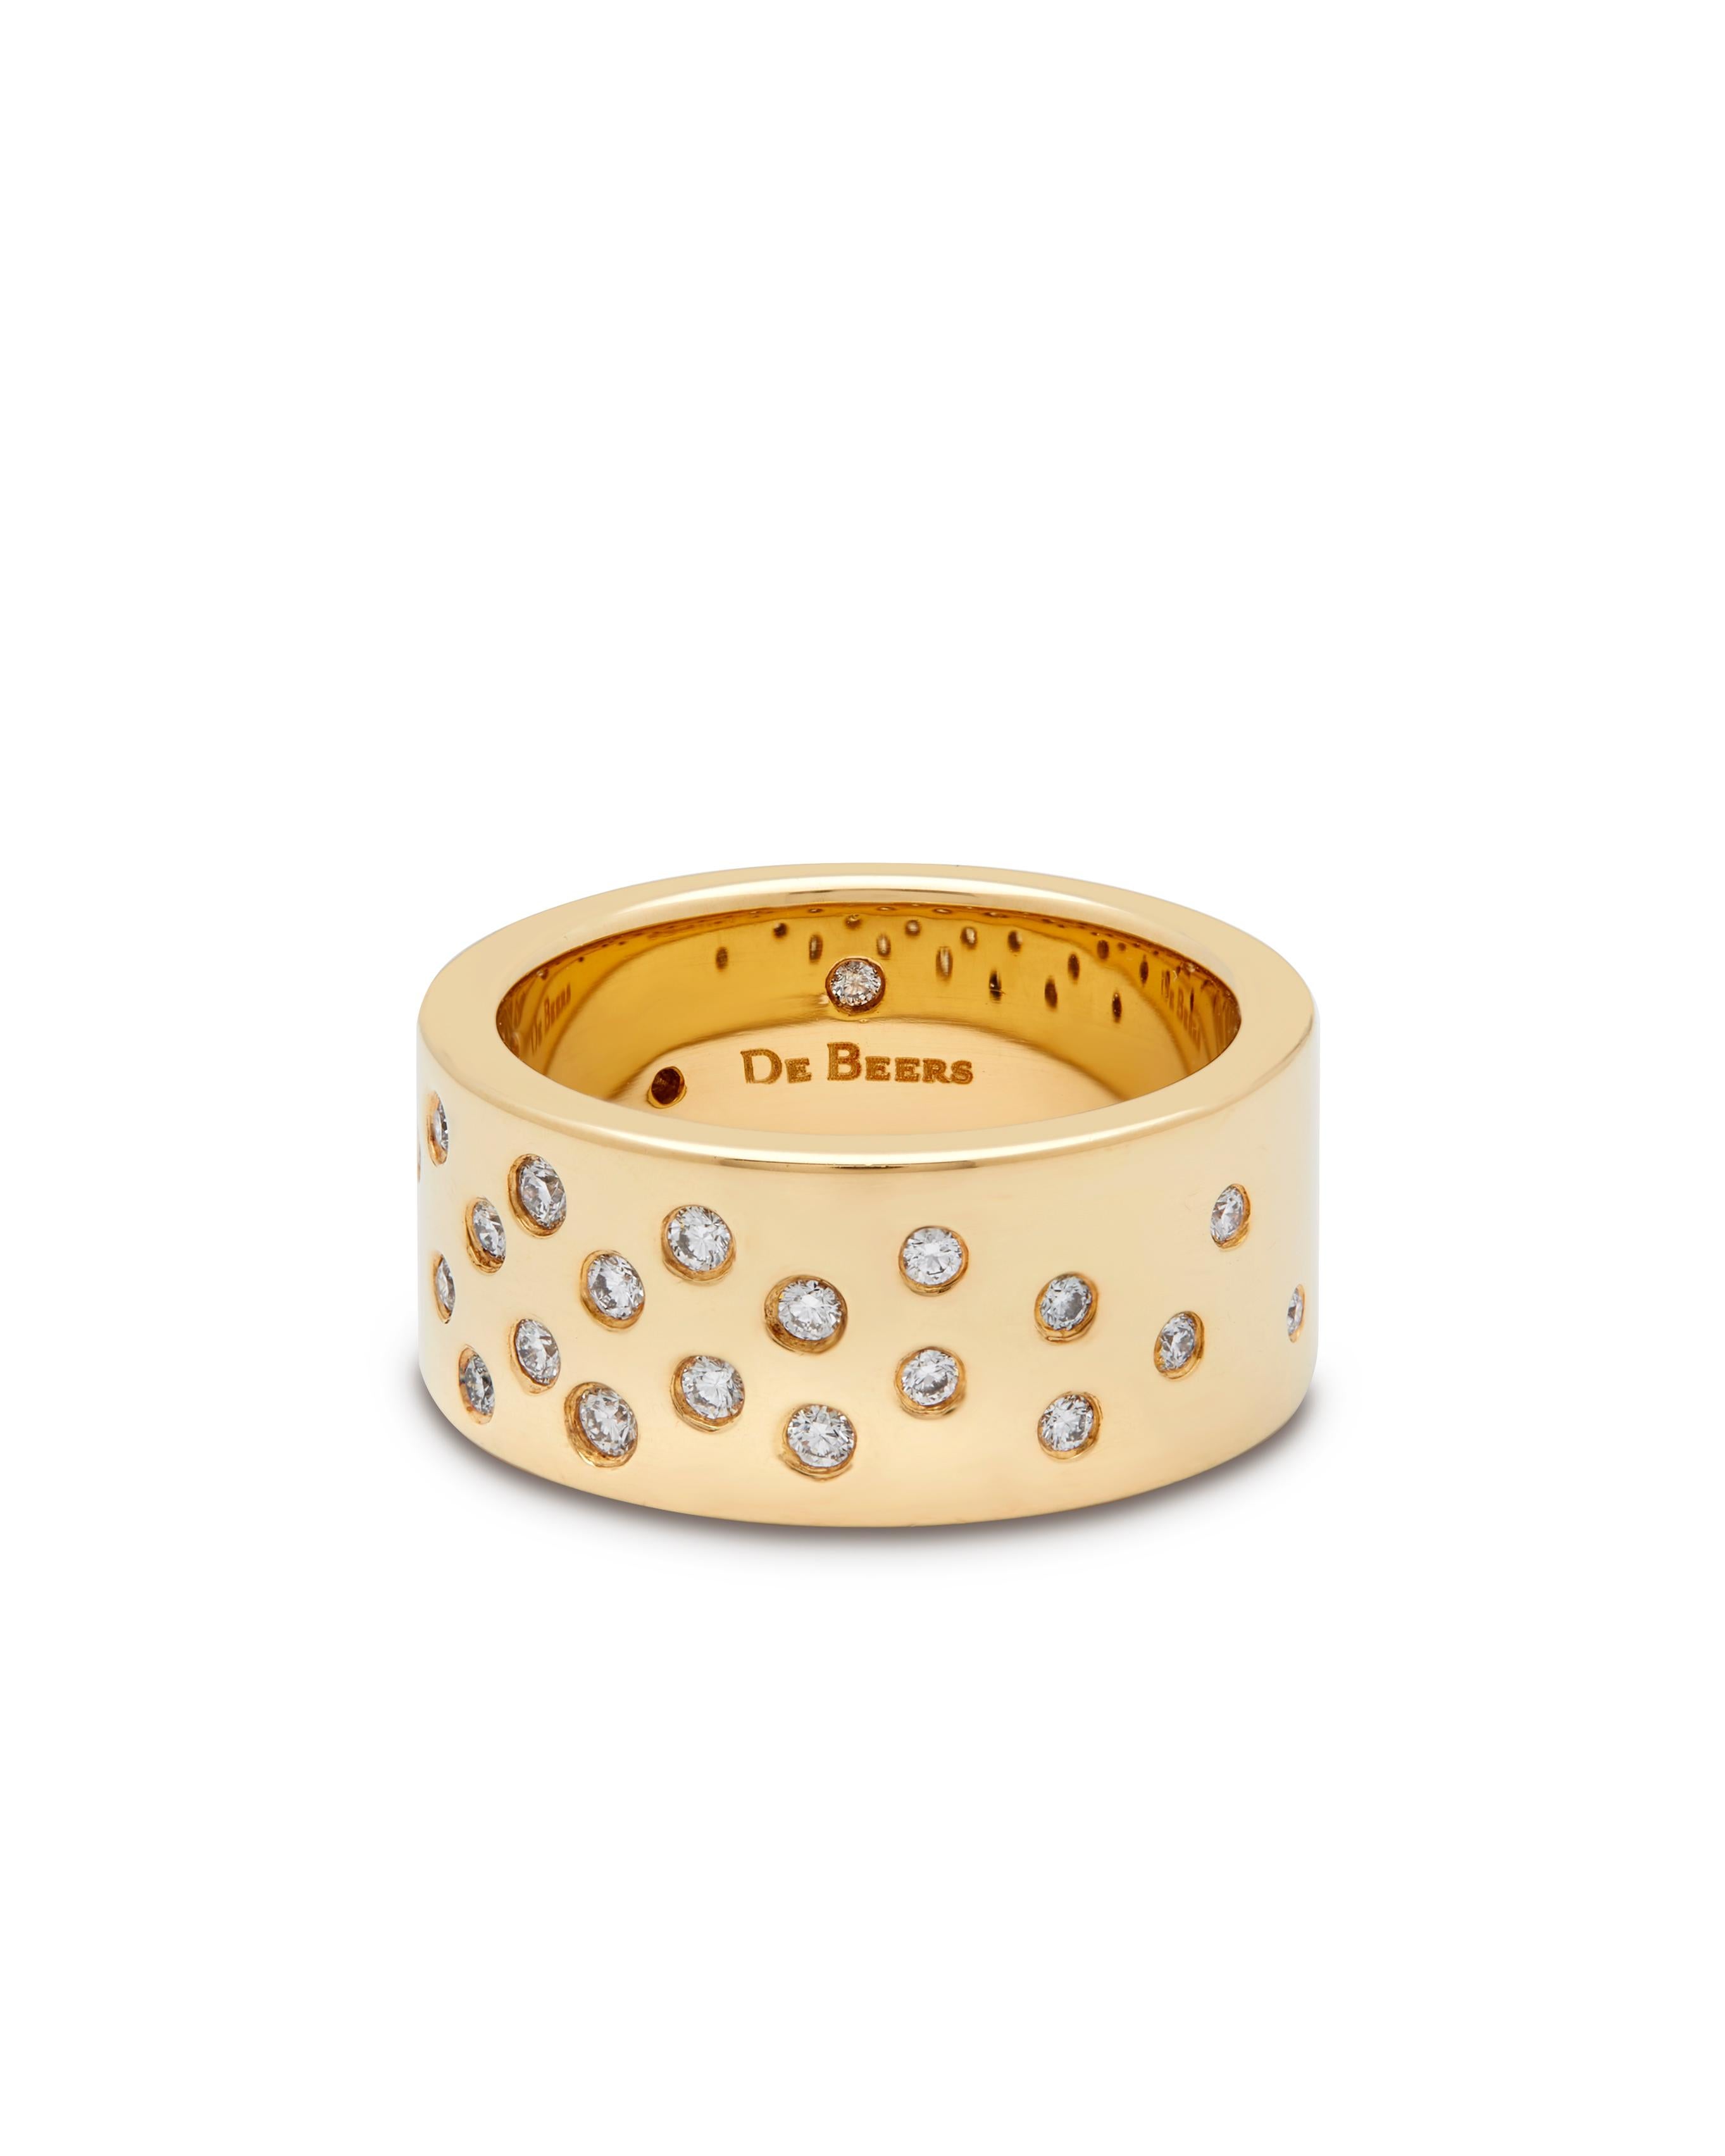 Bague De Beers en or jaune 18ct avec diamant.

La bague est parsemée de 26 diamants ronds de taille brillant en serti clos, dont un caché à l'intérieur de l'anneau, d'un poids total approximatif de 0,47ct, de couleur F-G et de pureté VS. 
L'anneau